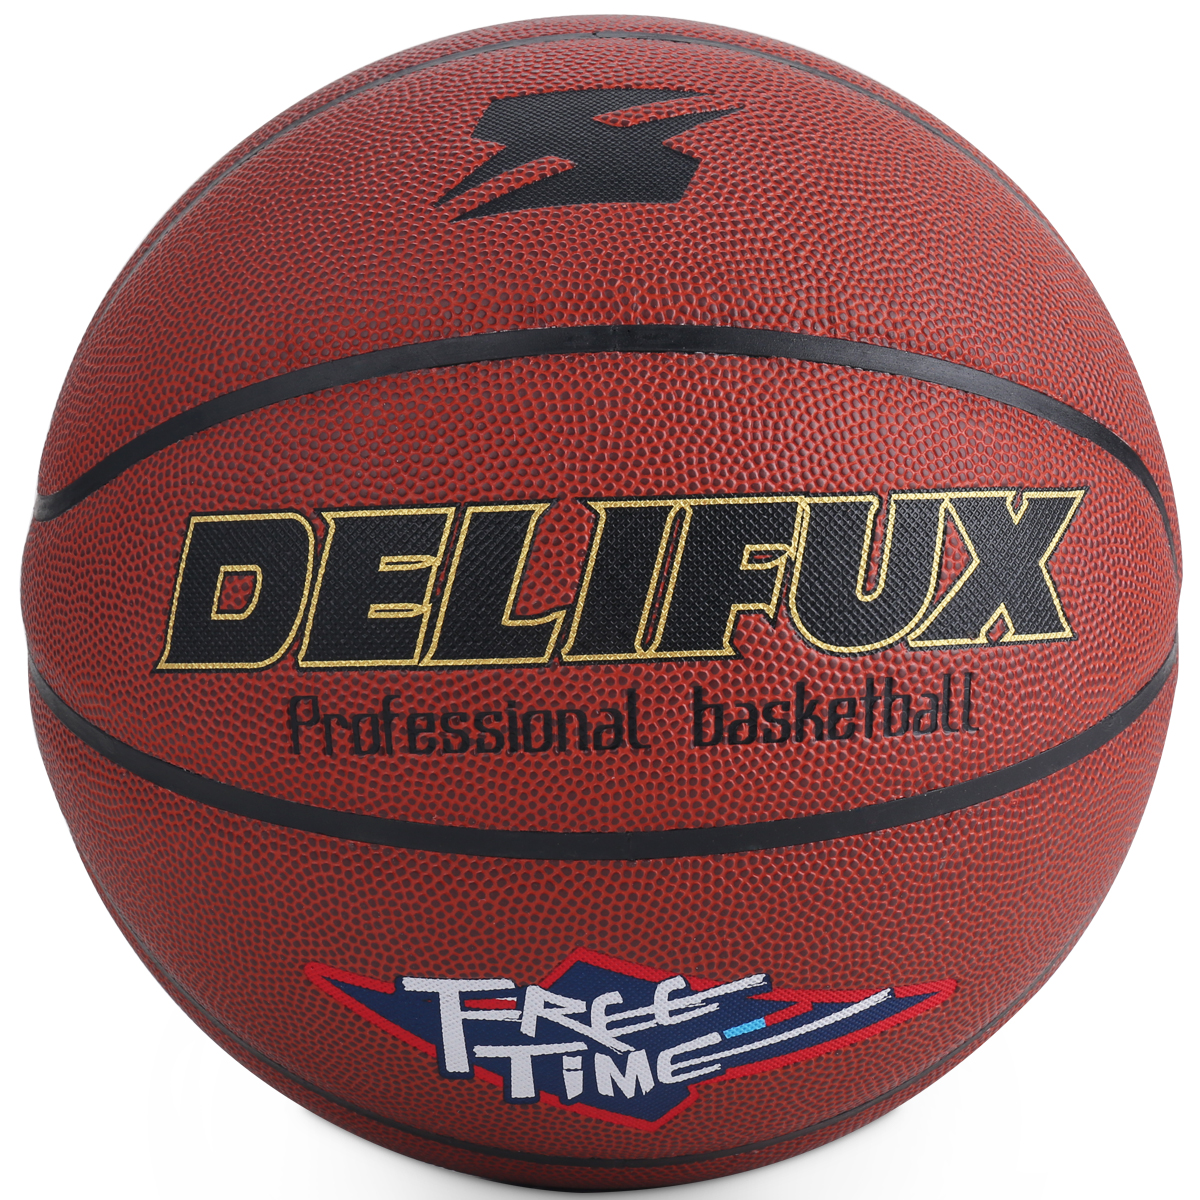 Deli-F1117 Basketball